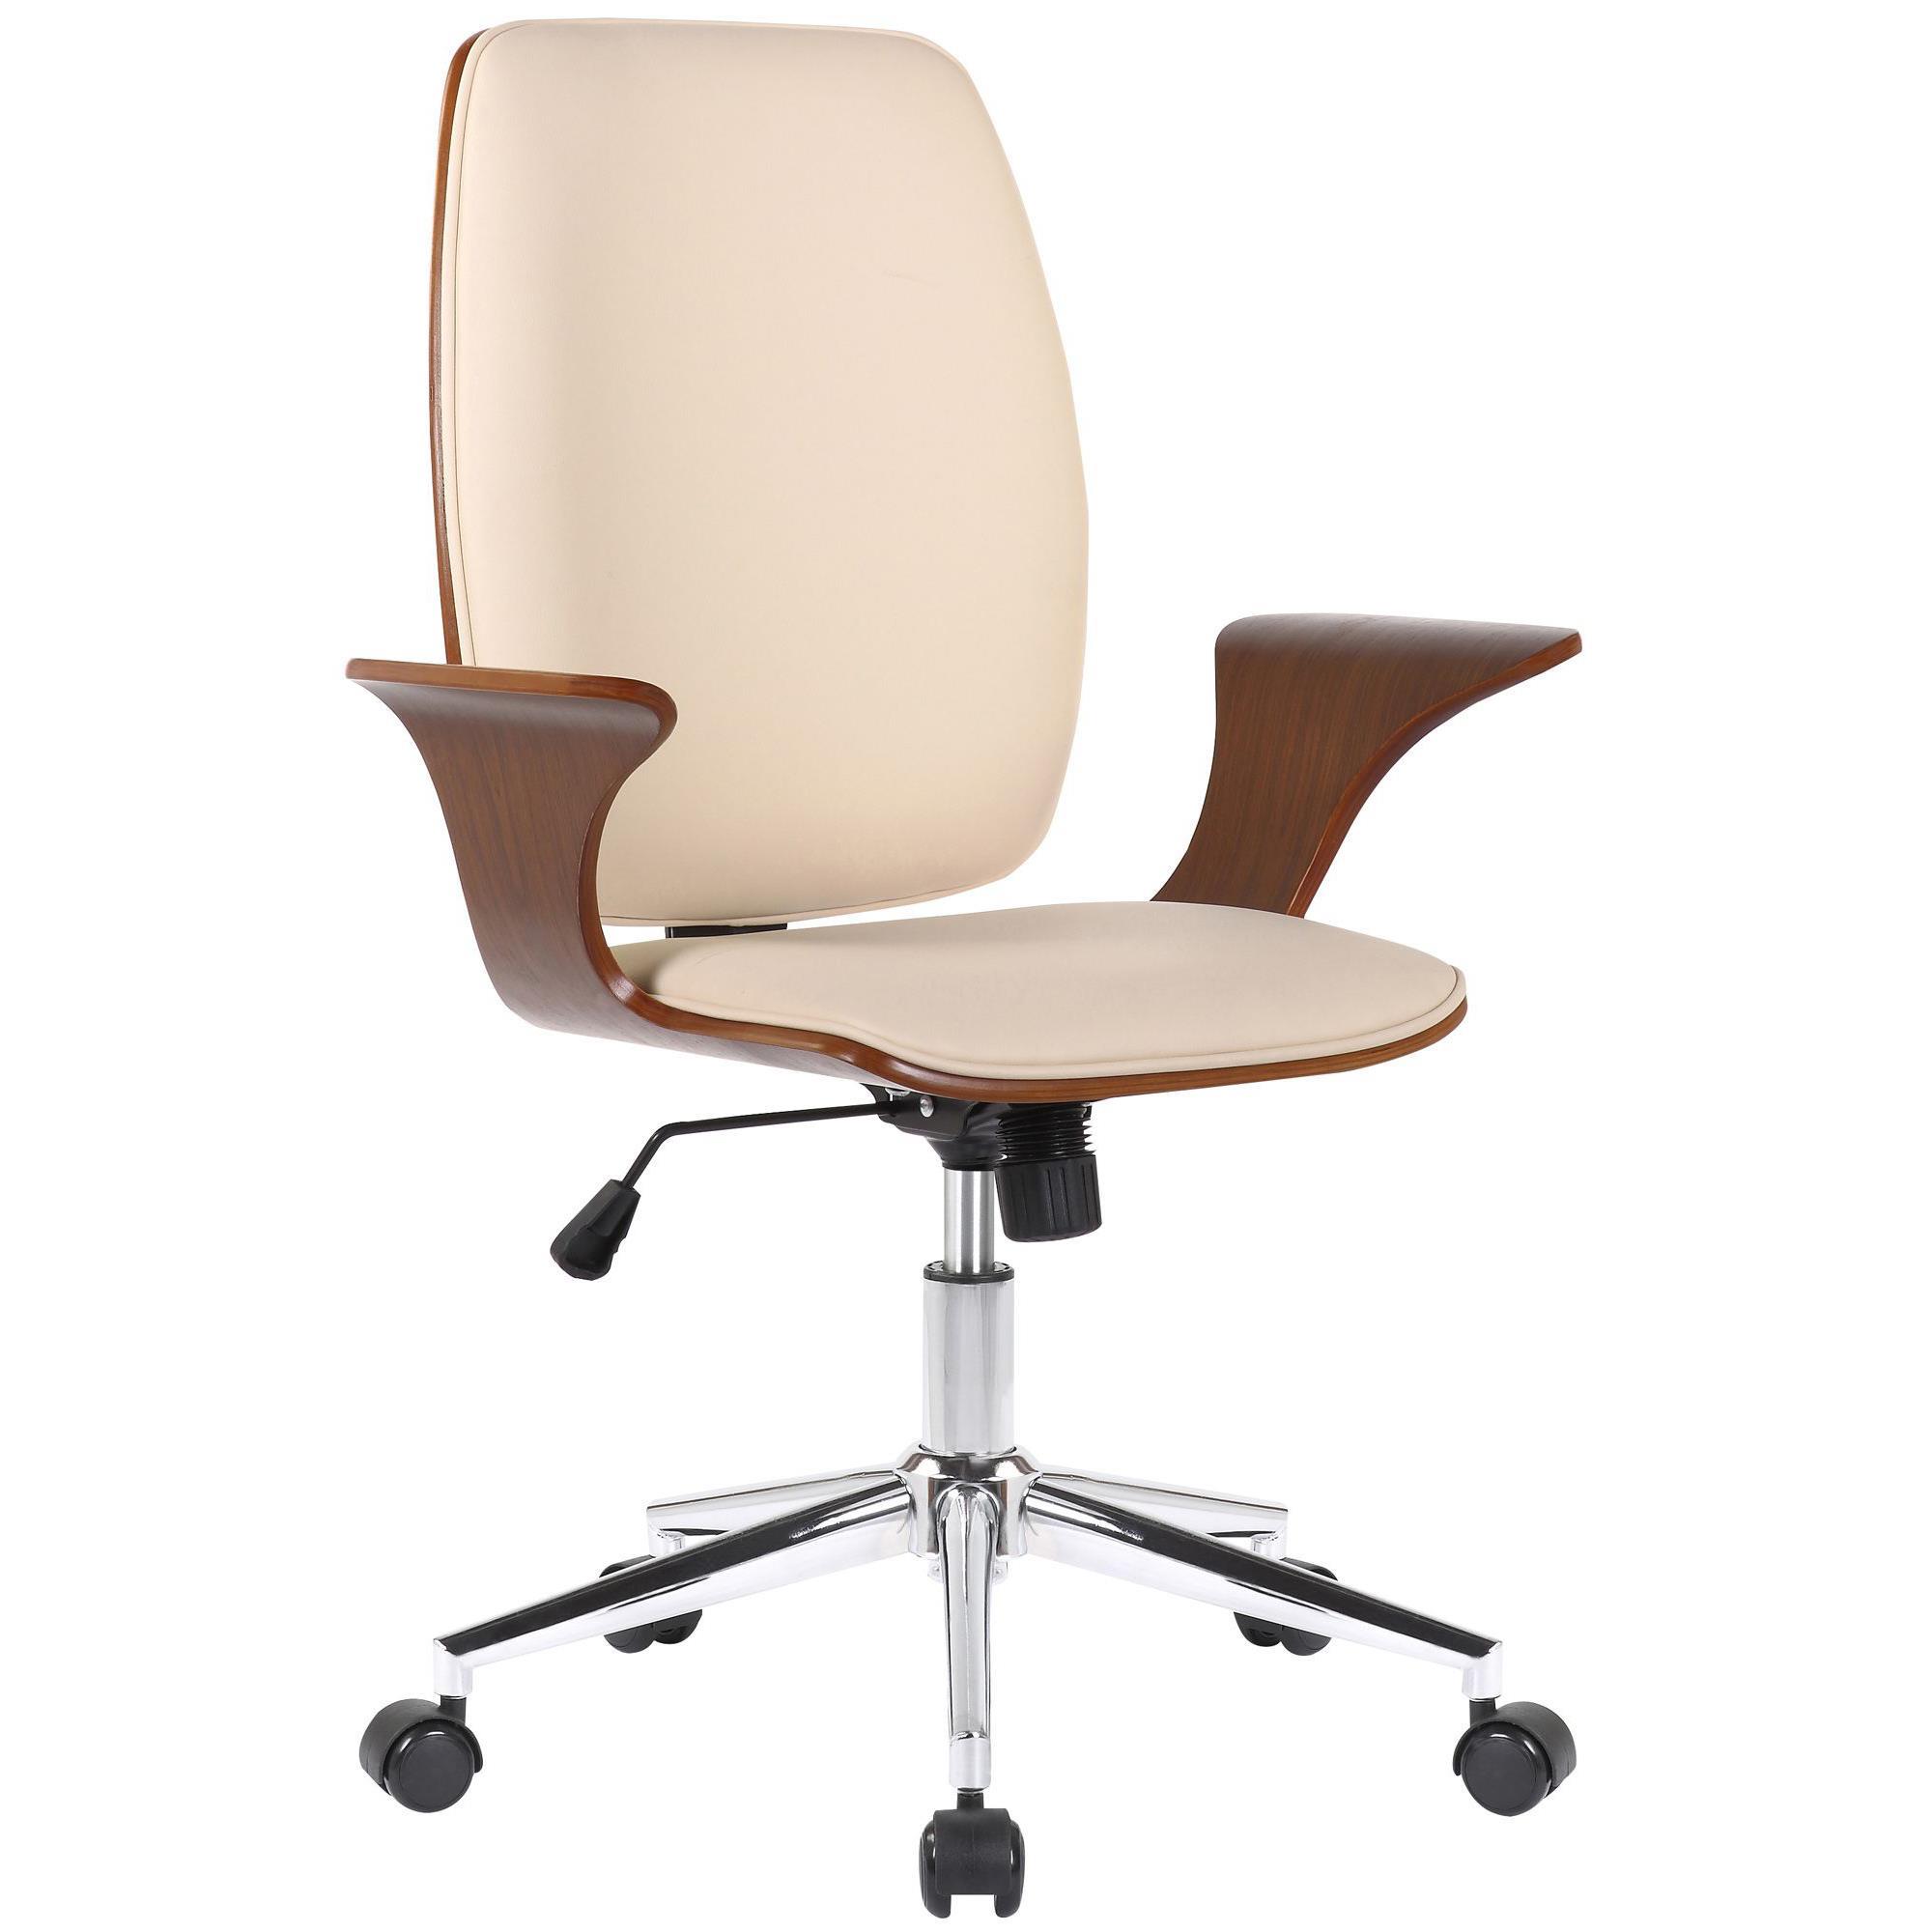 Chaise de Bureau BOMBAY, Design Elégant et Confortable, en Bois, Revêtement en Cuir, Crème